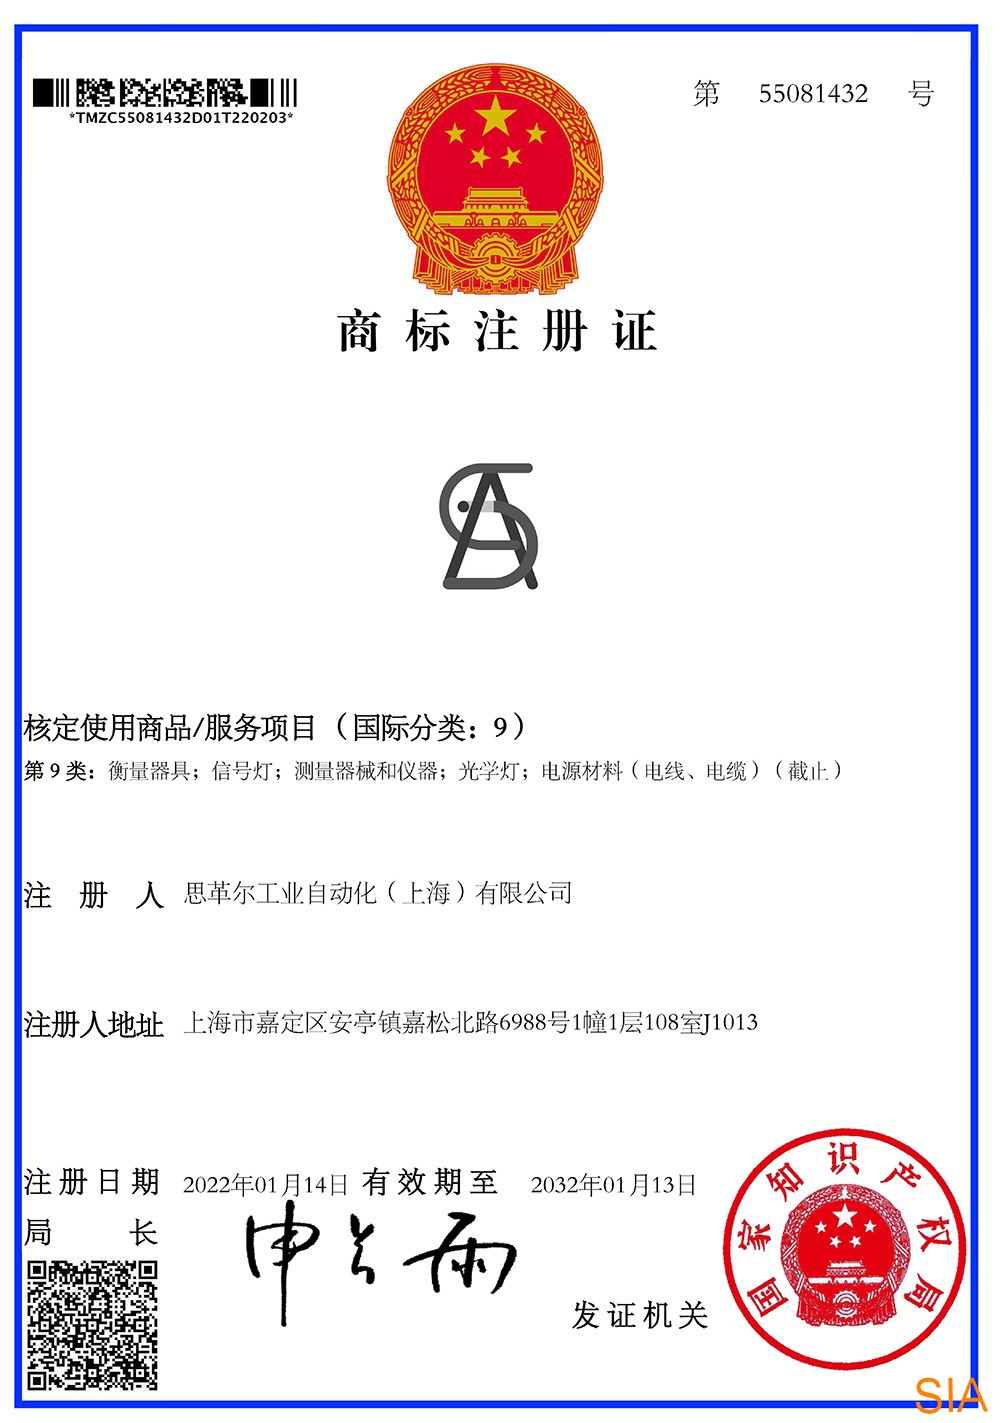 思革尔工业自动化（上海）有限公司 Secure Industrial Automation (Shanghai) Co., Ltd.